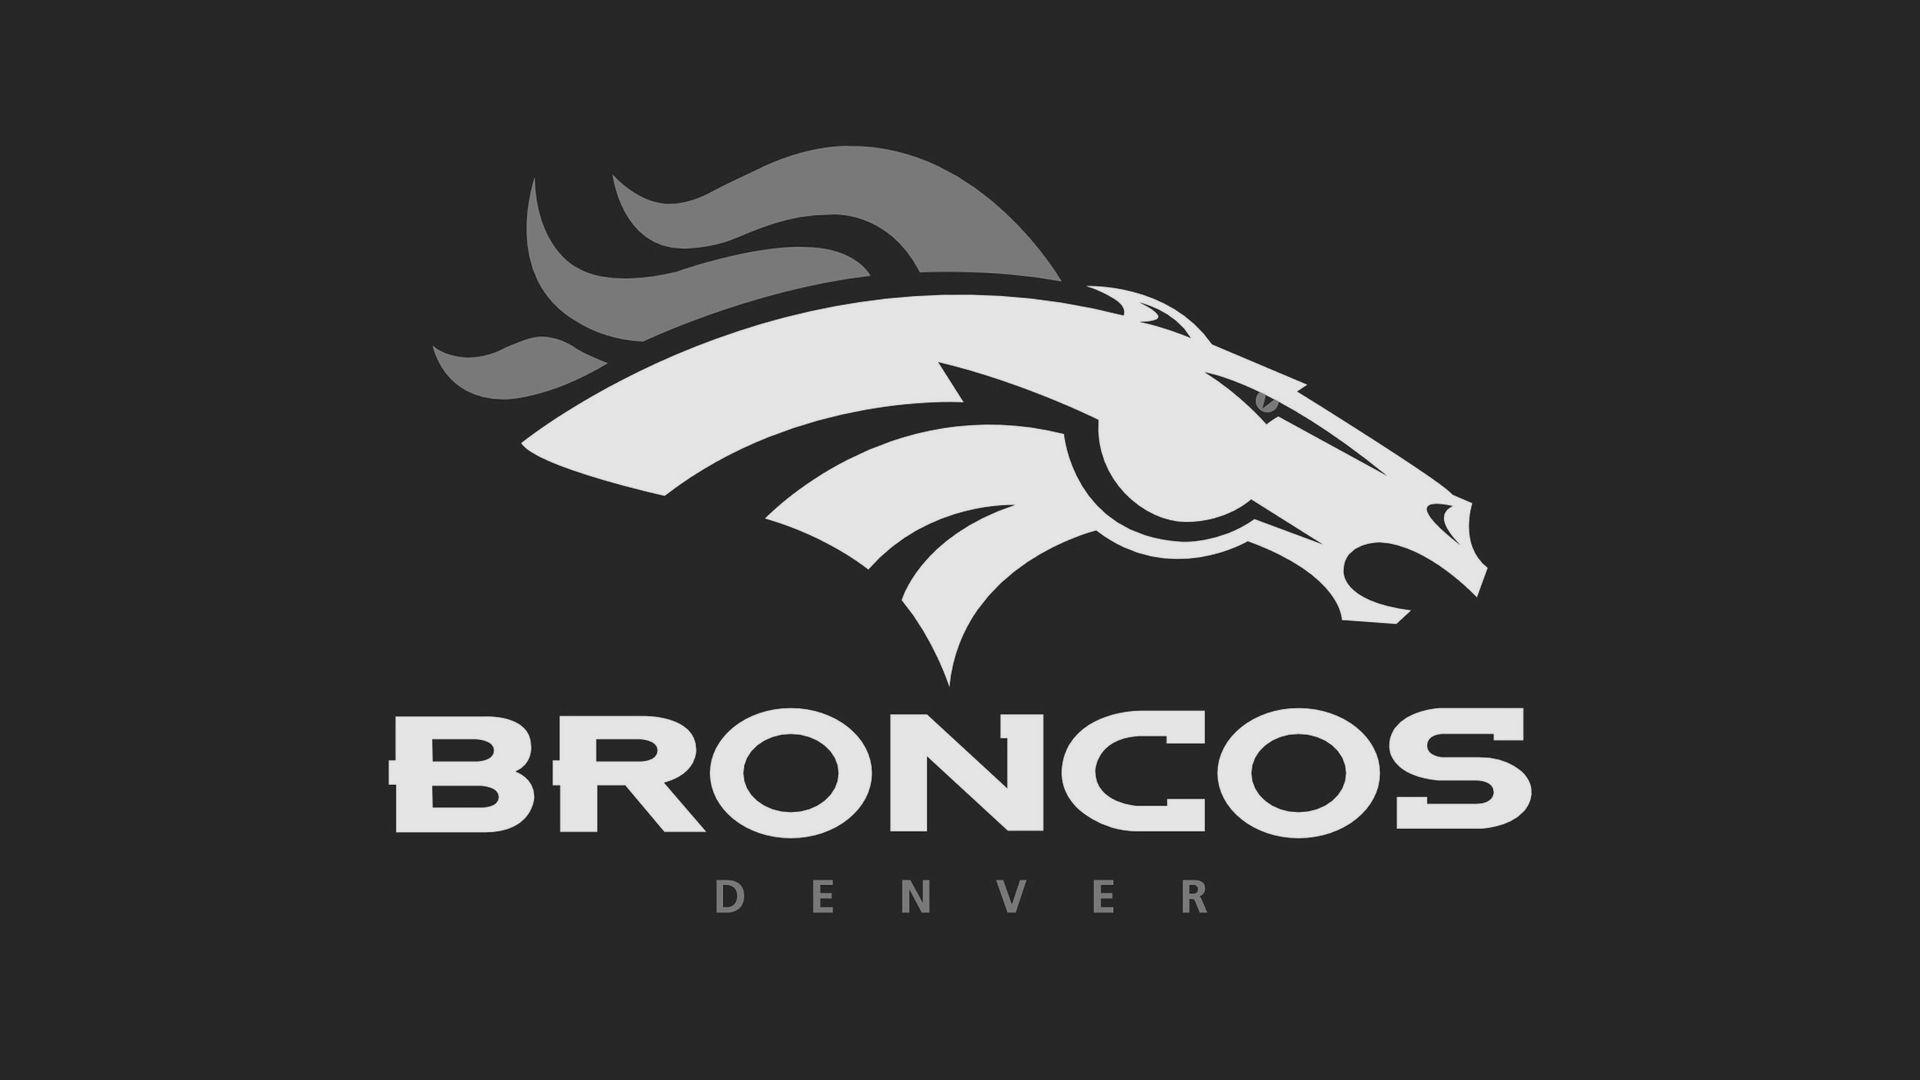 Black and White Broncos Logo - NFL Denver Broncos Black And White Grayscale Logo 1920x1080 HD NFL ...